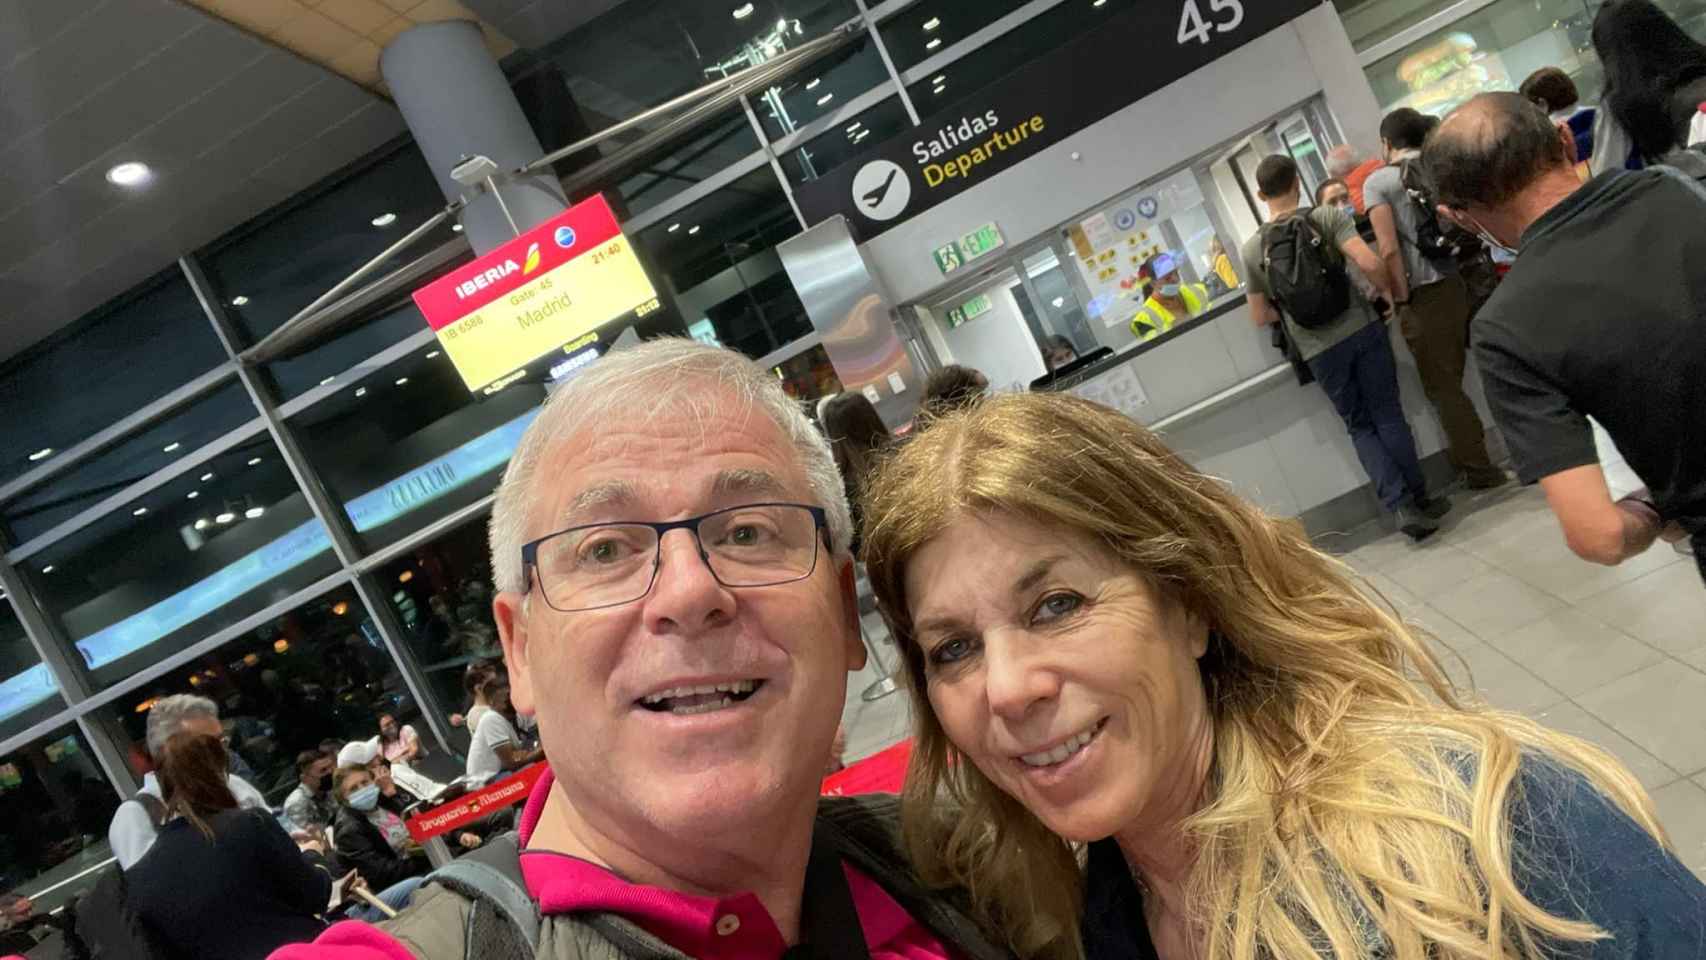 José Antonio Mas con Jeanette en el aeropuerto.